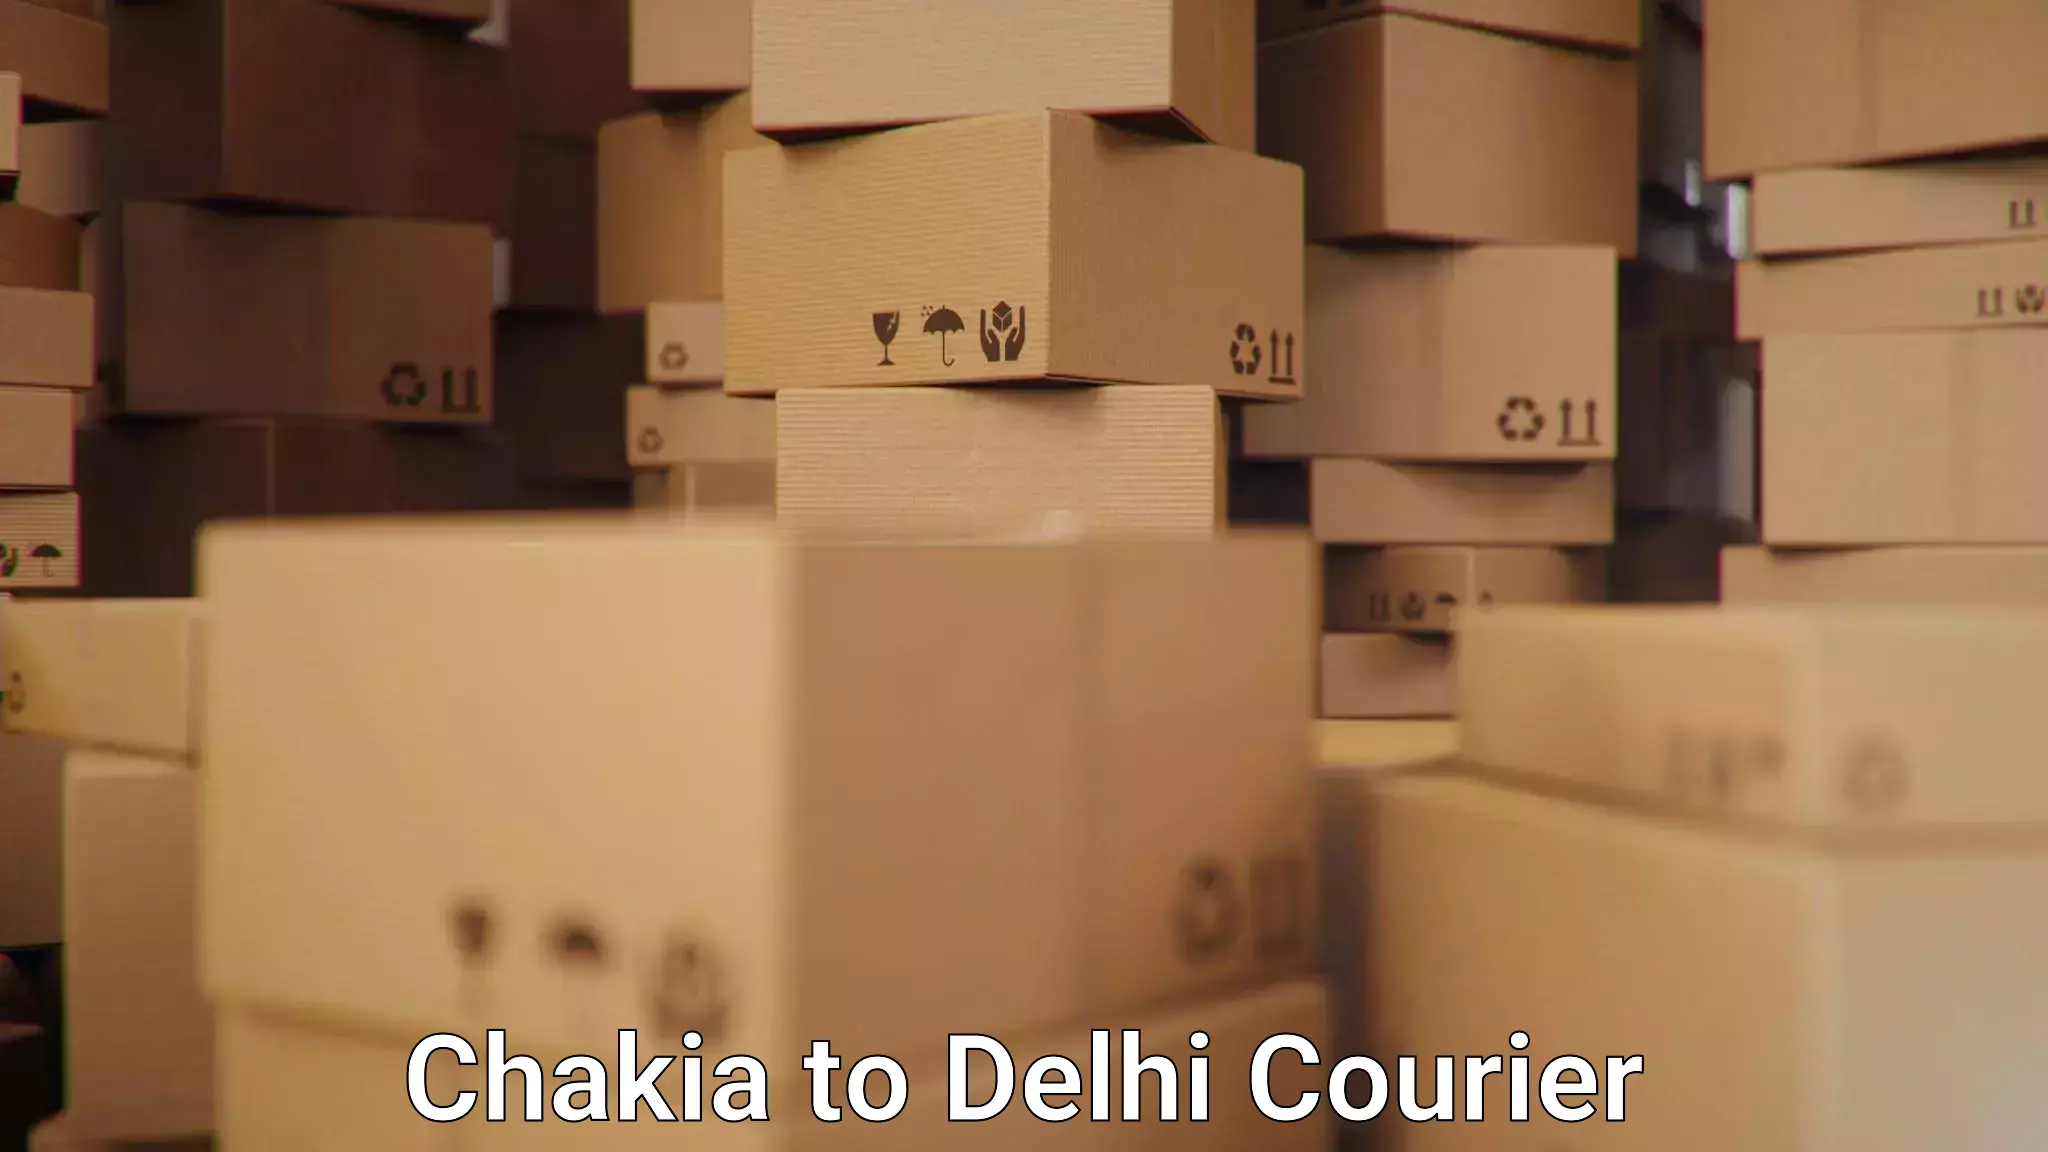 Urban courier service Chakia to Delhi